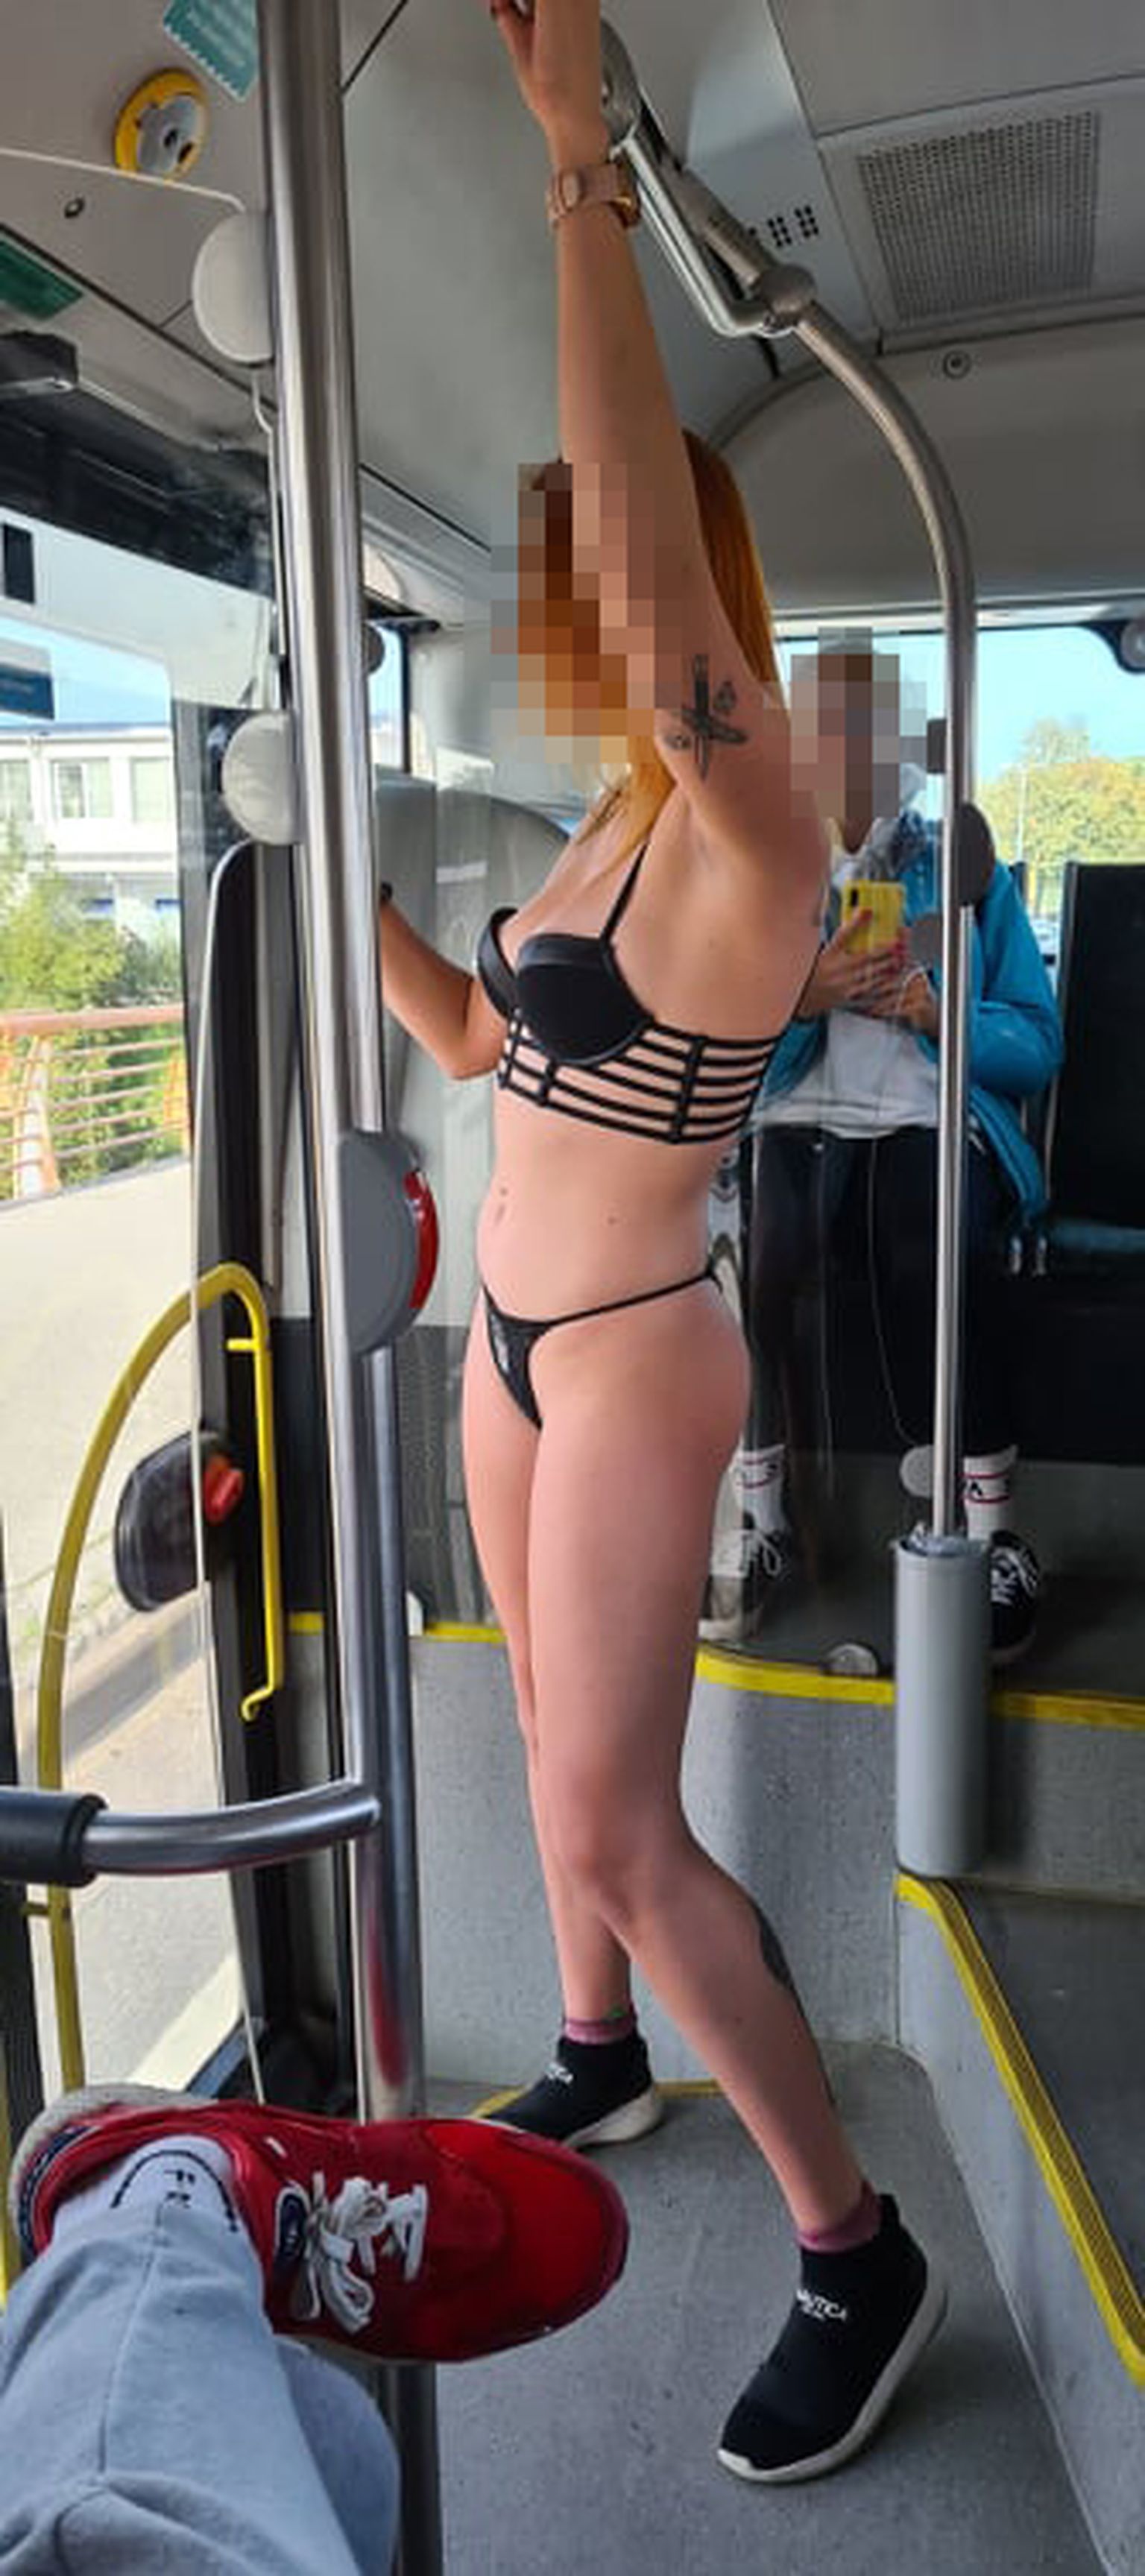 Pühapäeval Tallinnas 1A bussi tulnud neiu otsustas end riidest lahti võtta.